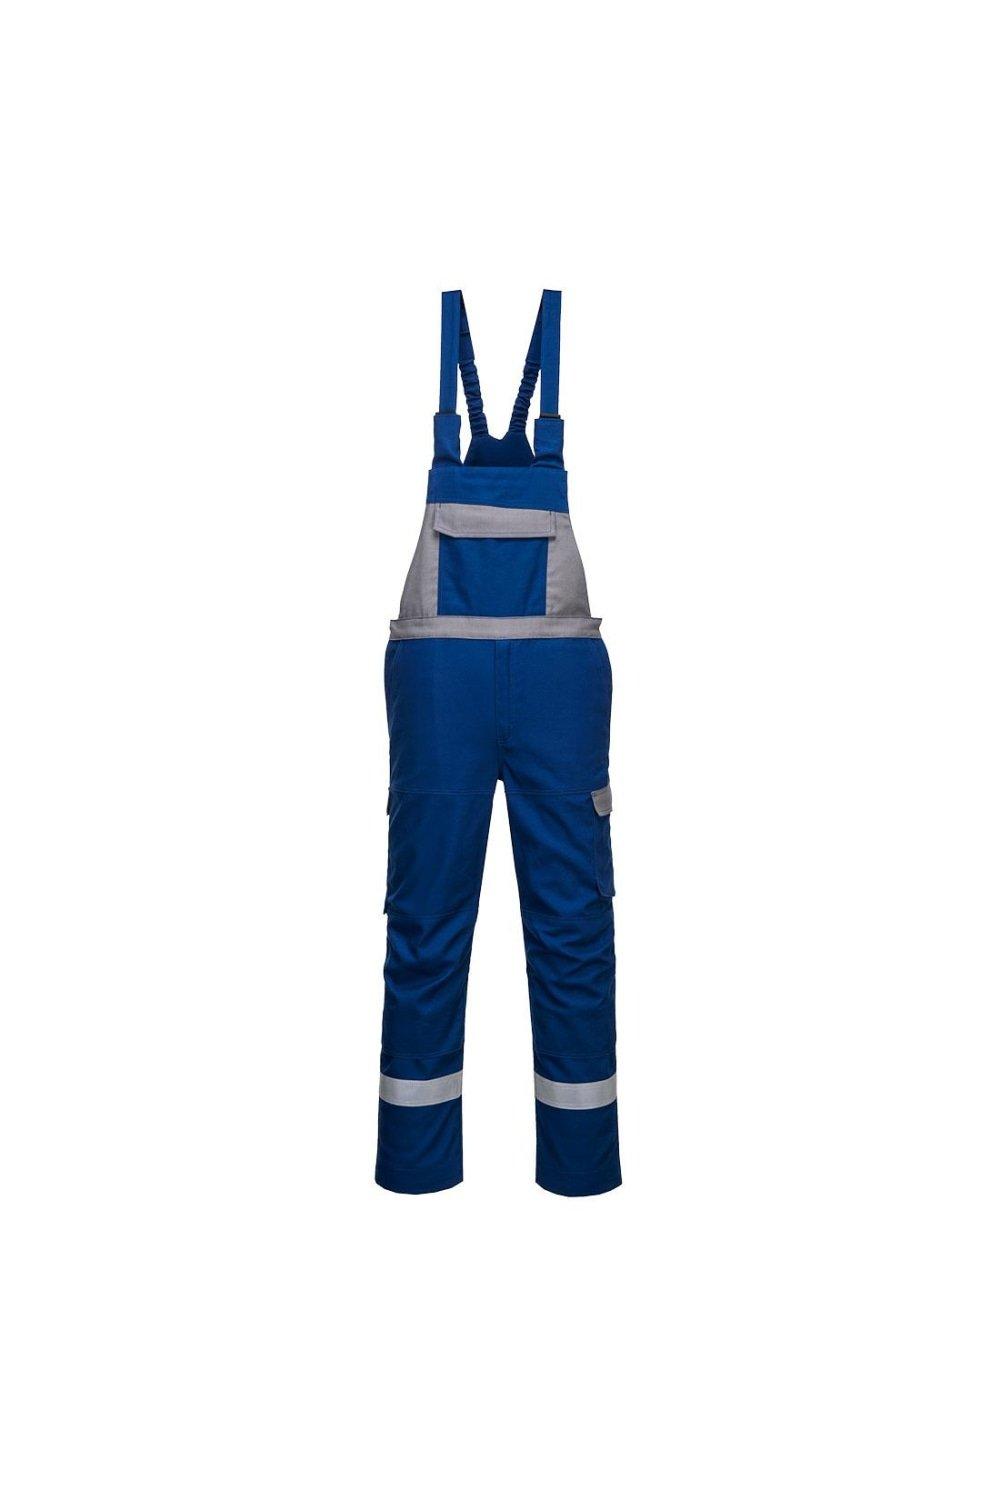 Двухцветные брюки с нагрудником и подтяжками Bizflame Ultra Portwest, синий